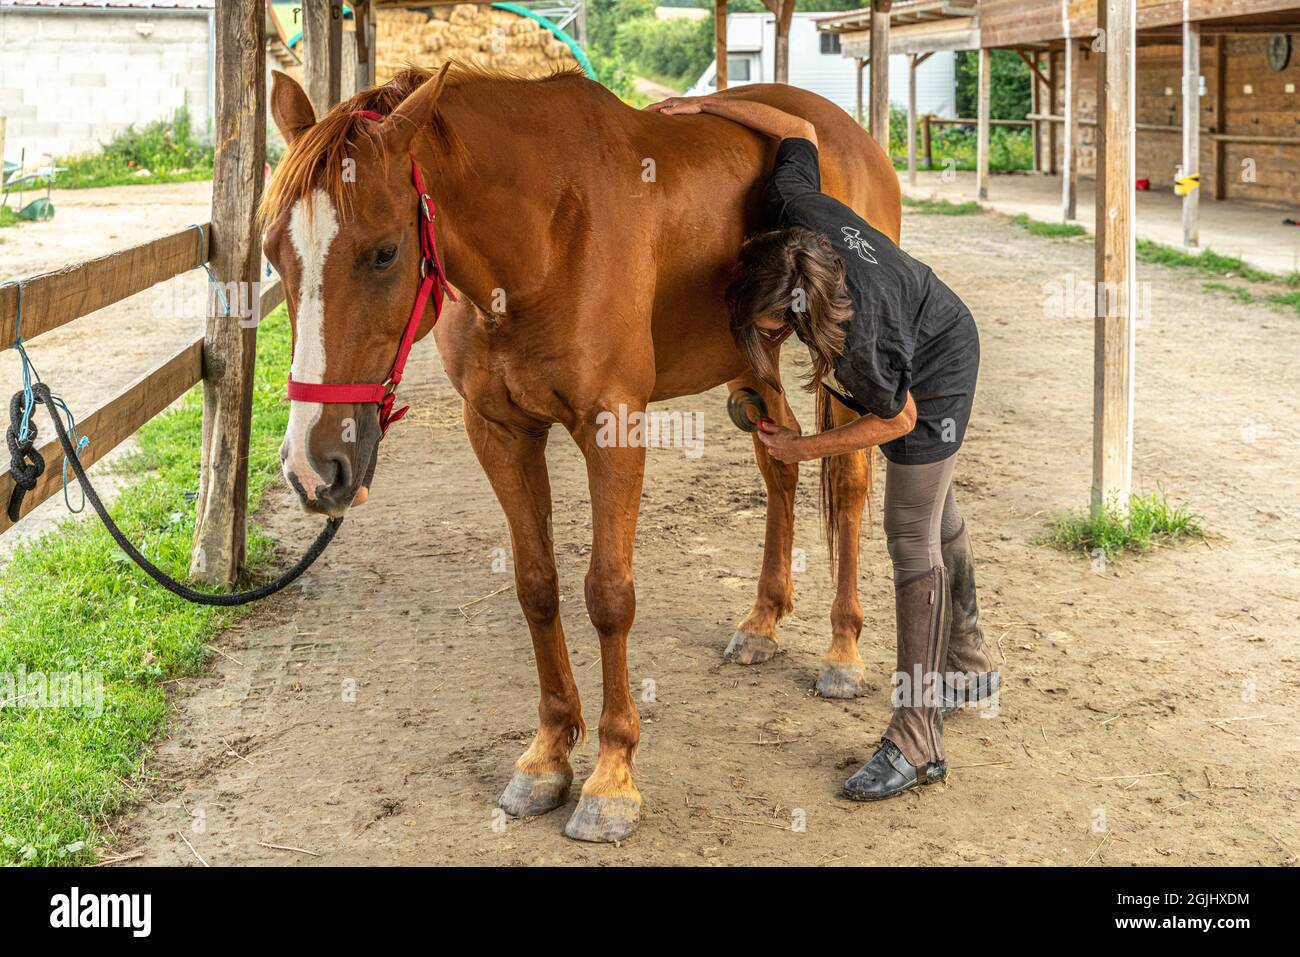 La horsewoman prend soin d'elle en toilettant, en se brossant et en nettoyant le manteau et les sabots. Lyon, France, Europe Banque D'Images